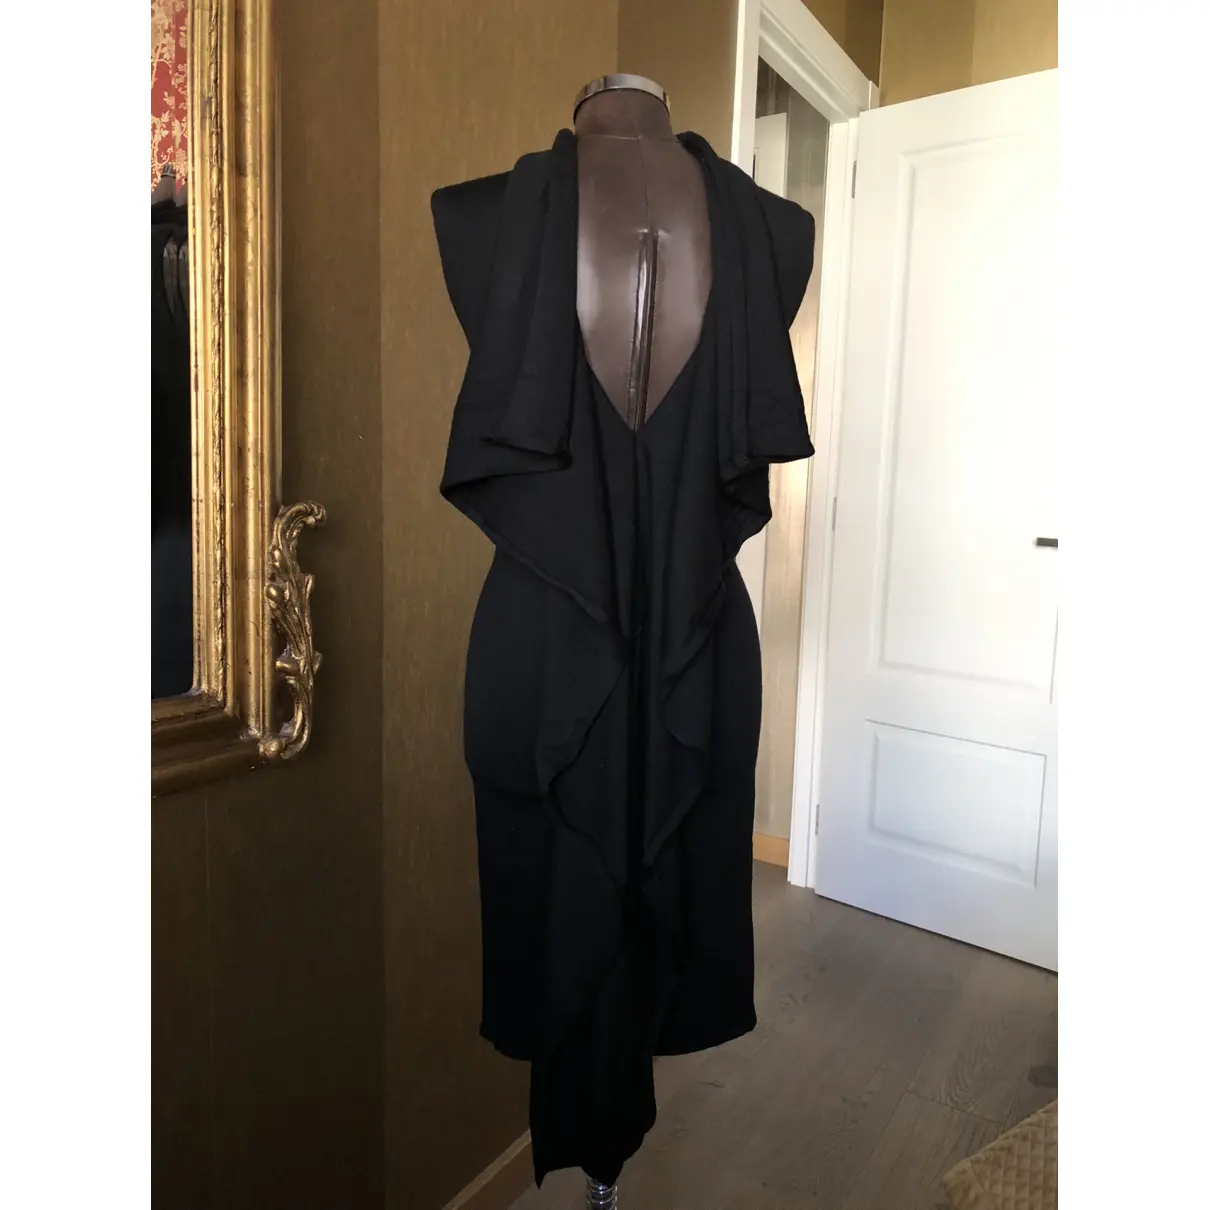 Buy Guy Laroche Wool mid-length dress online